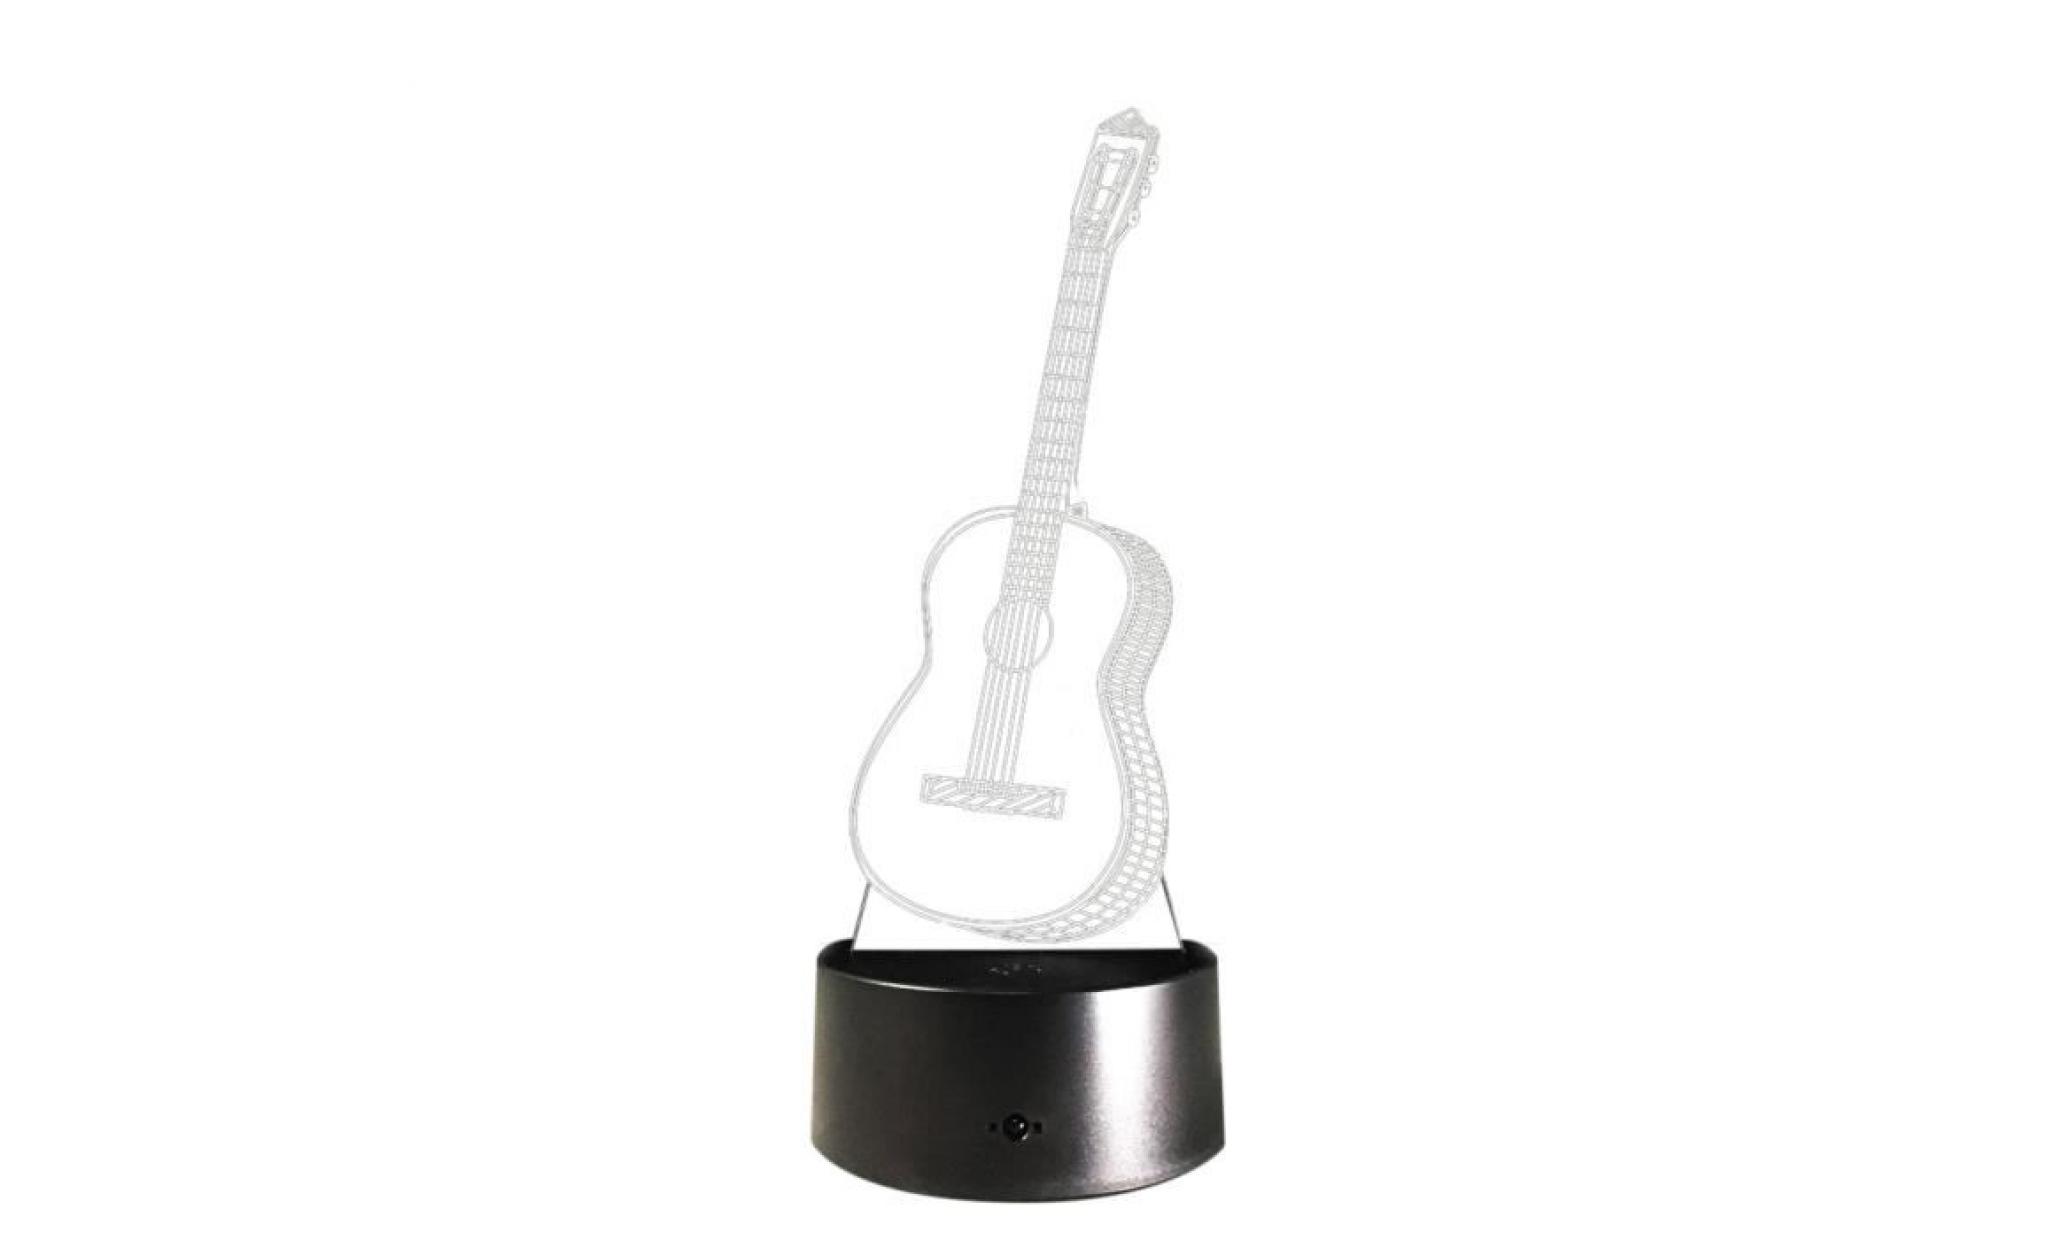 led guitar ukulele 3d night light 7 couleurs table lampe de bureau à touche cadeau de noël npl481